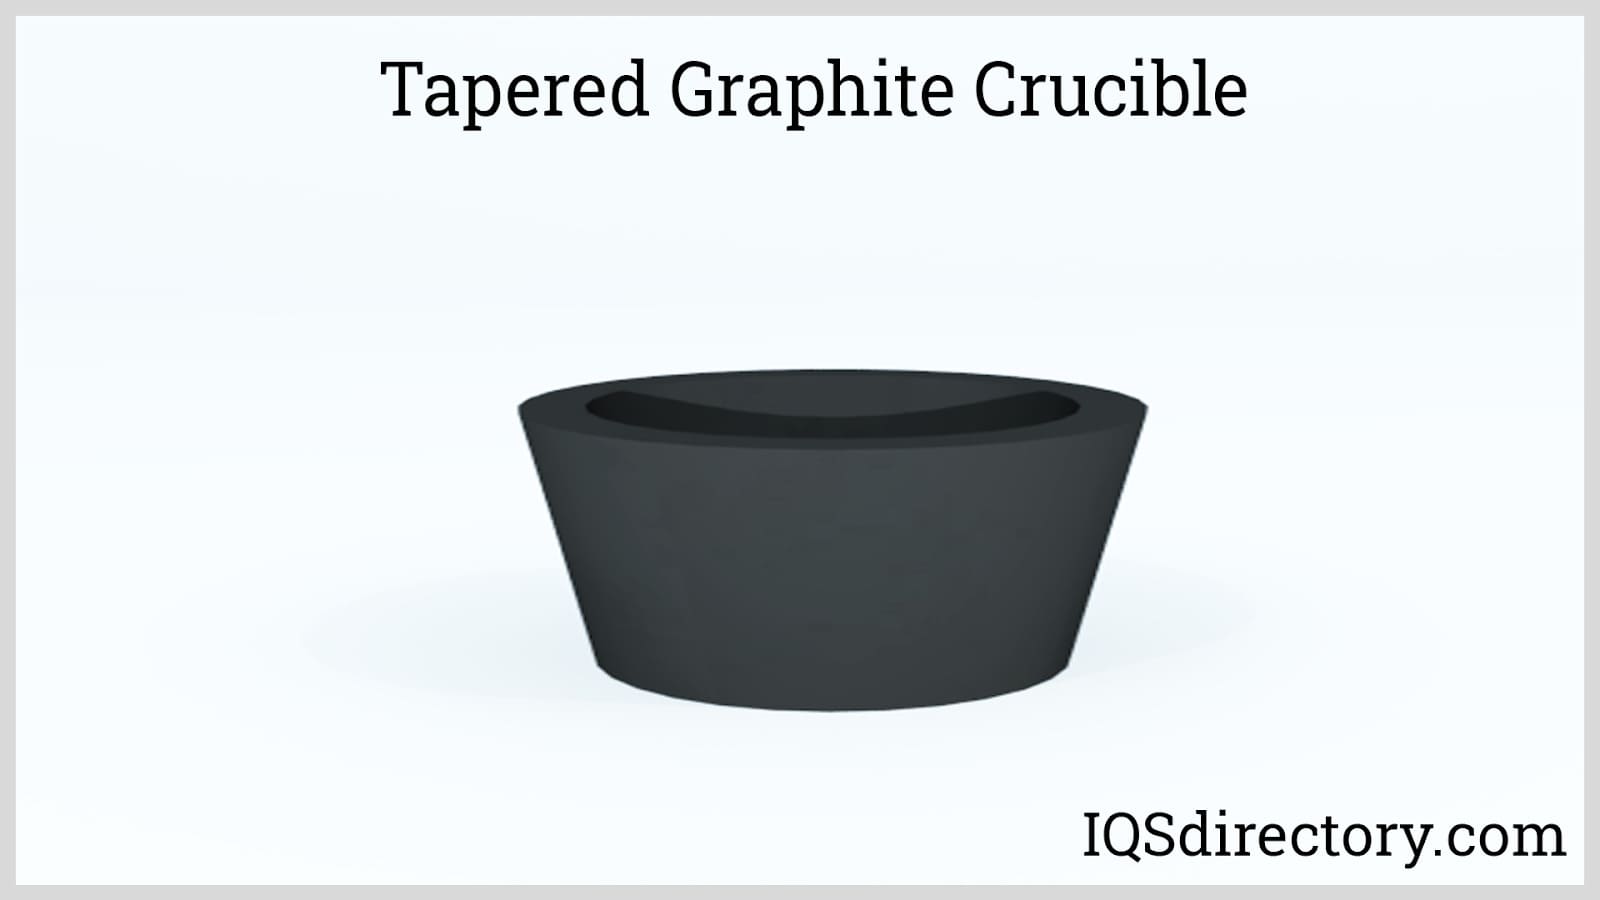 Tapered Graphite Crucible